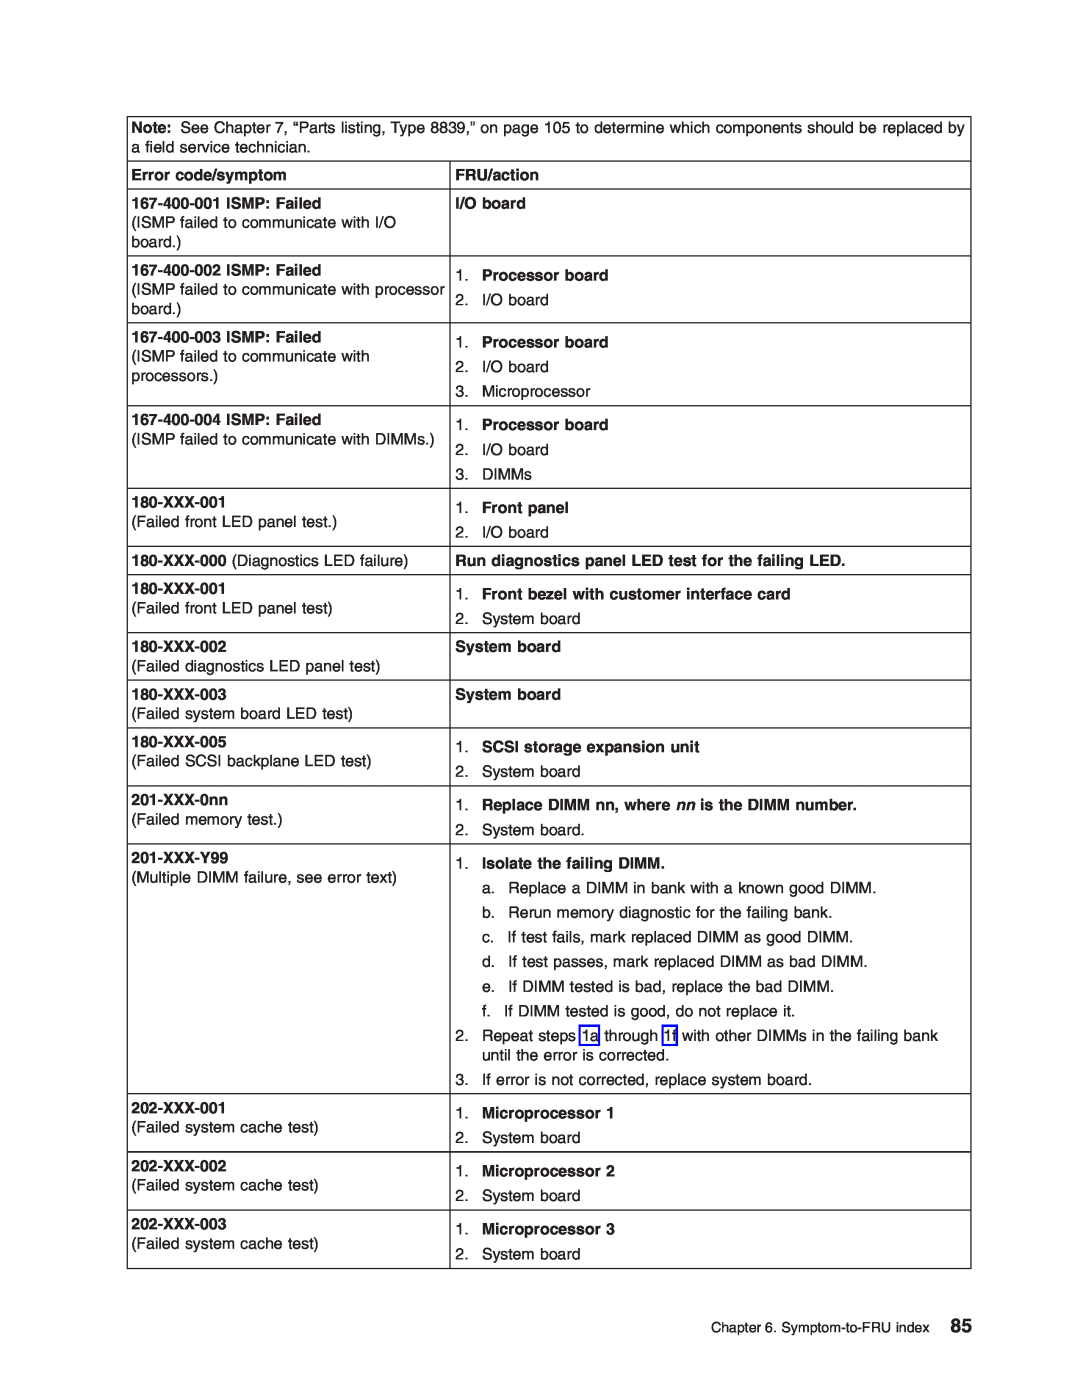 IBM HS40 manual Error code/symptom 